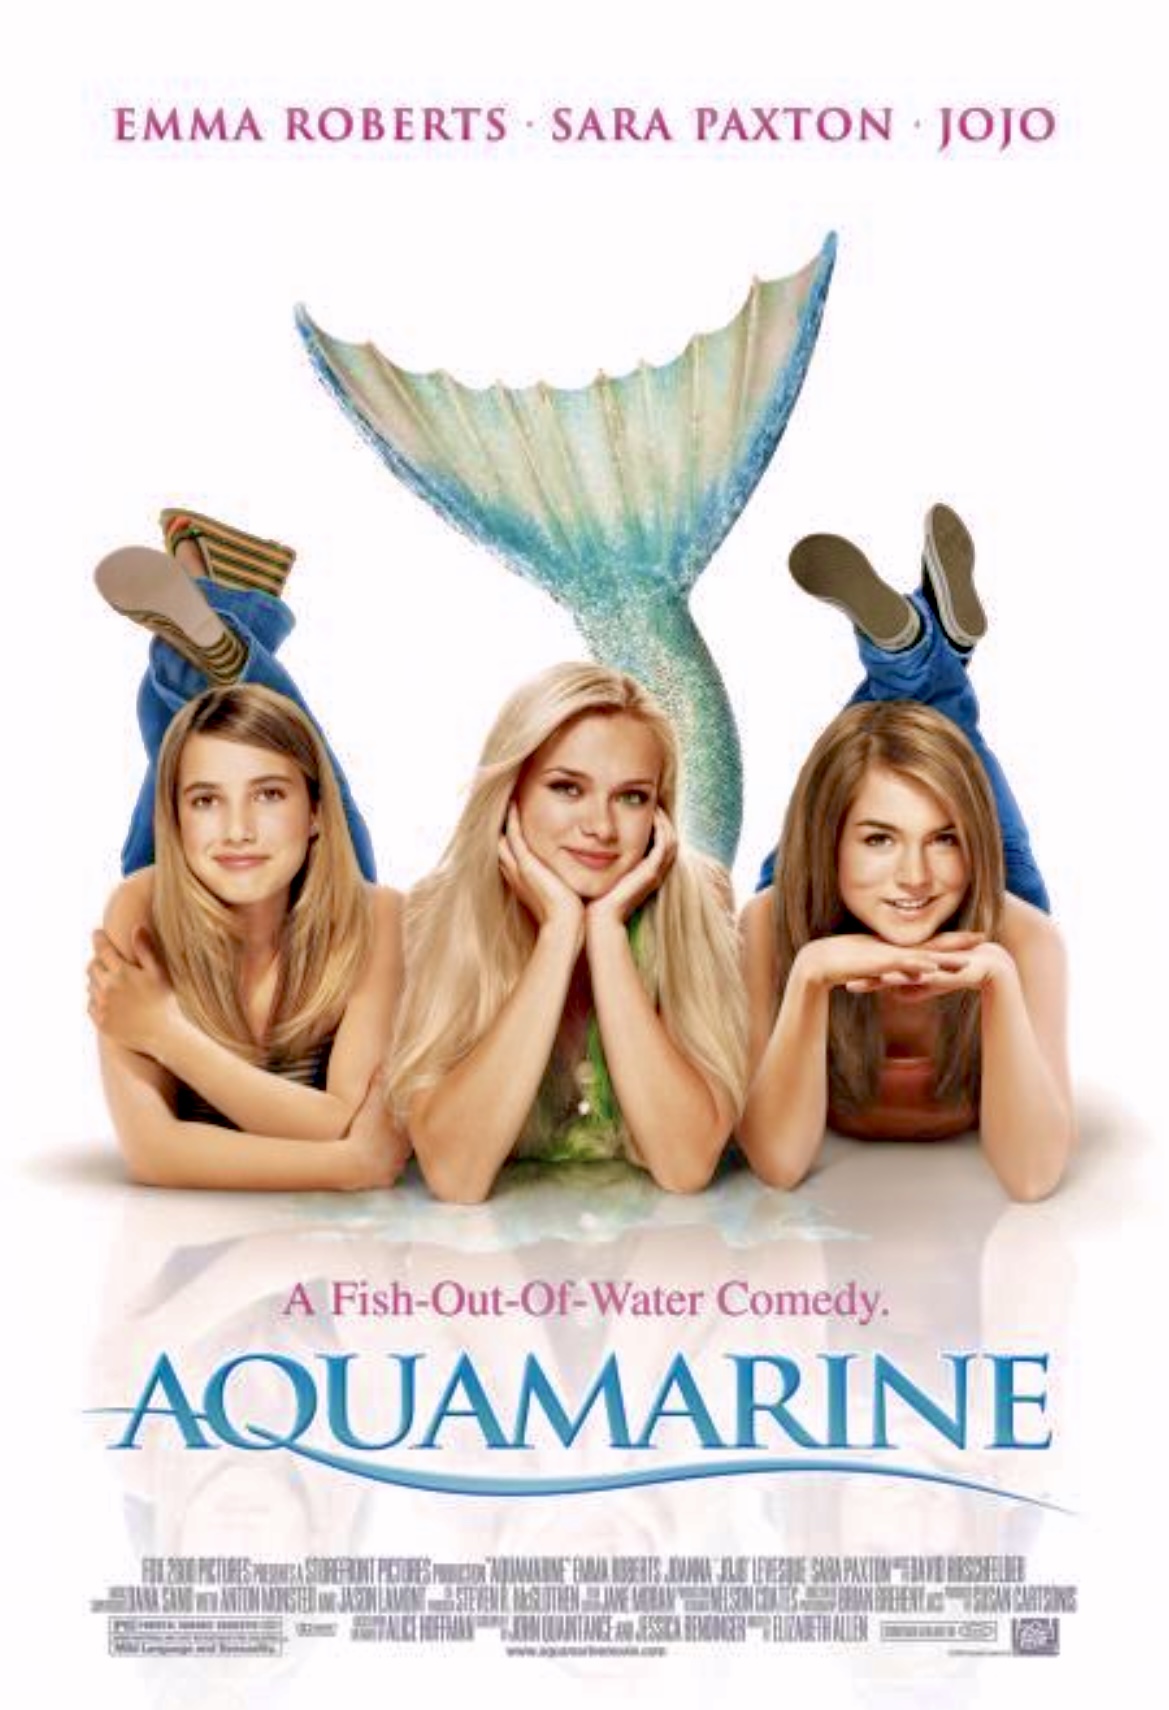 FULL MOVIE: Aquamarine (2006)